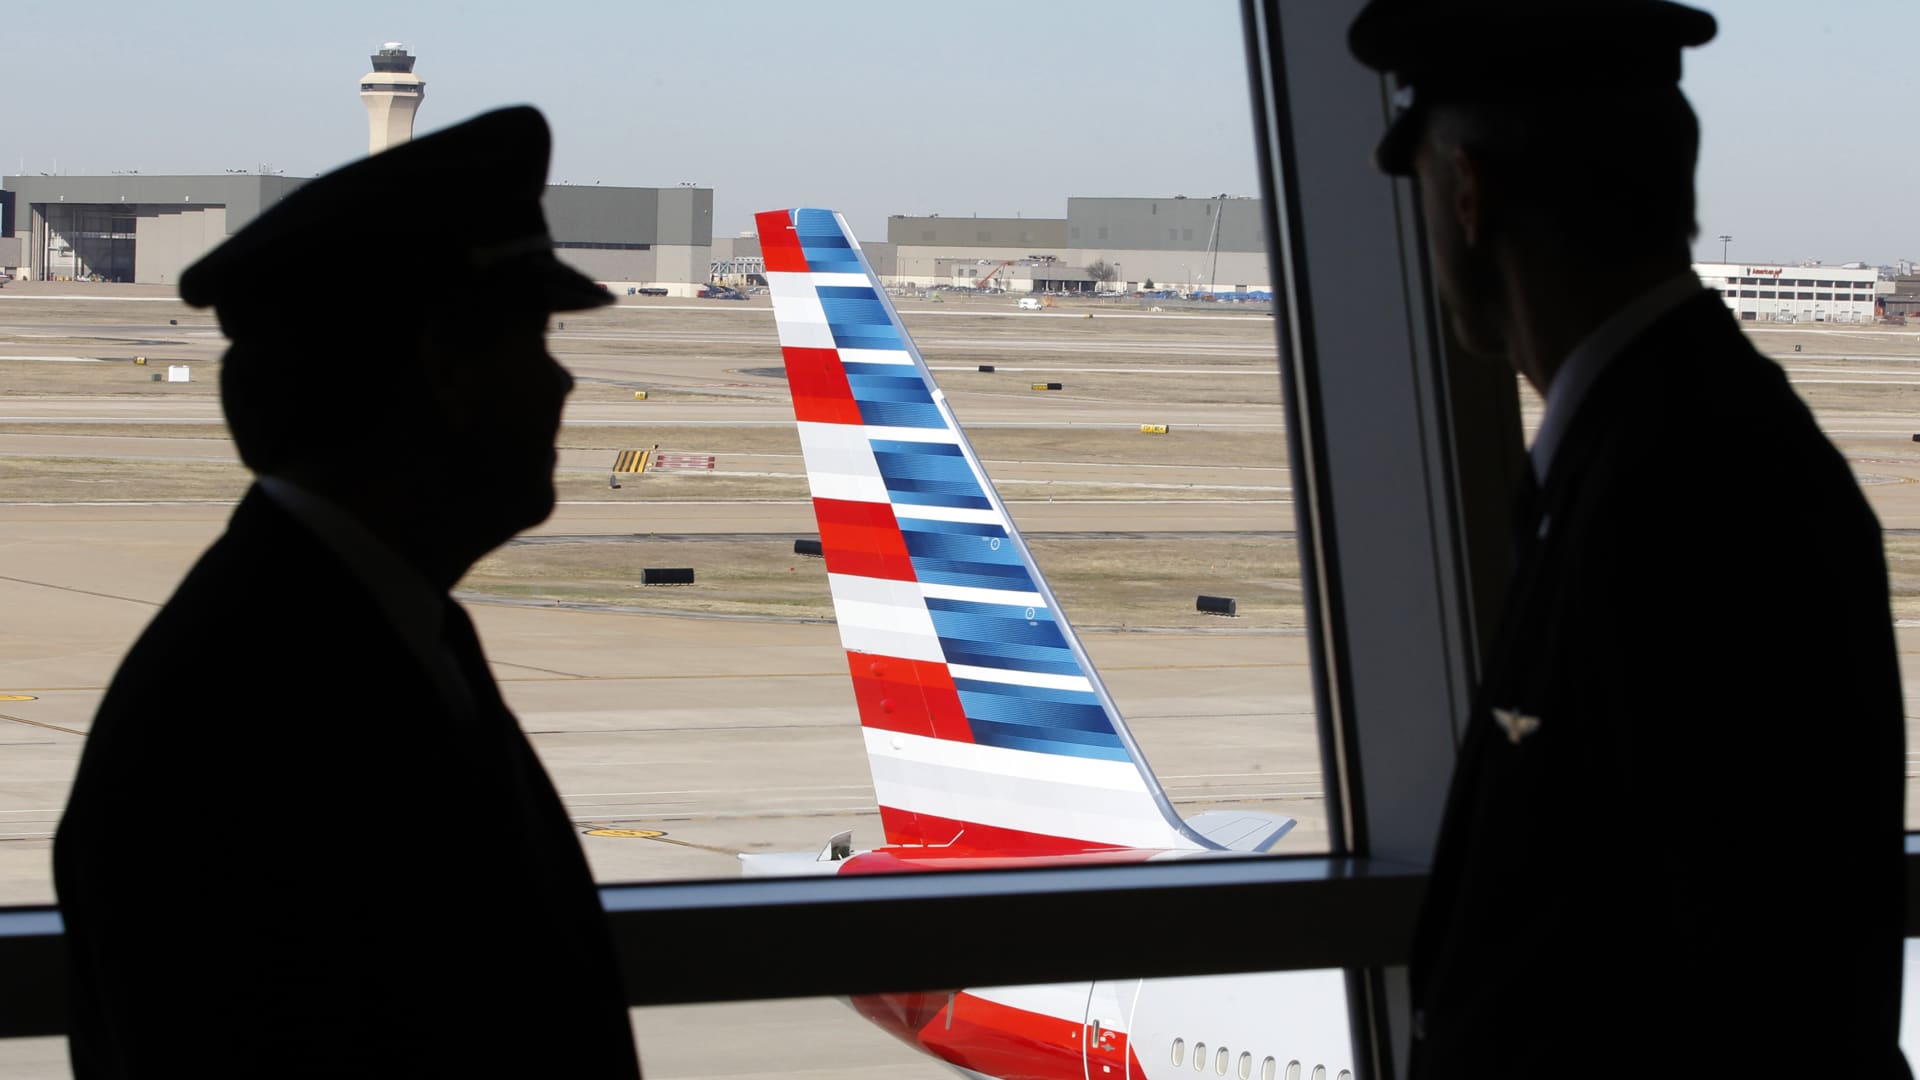 अनुबंध वार्ता जारी रहने के कारण अमेरिकन एयरलाइंस पायलट यूनियन ने हड़ताल प्राधिकरण वोट का आह्वान किया